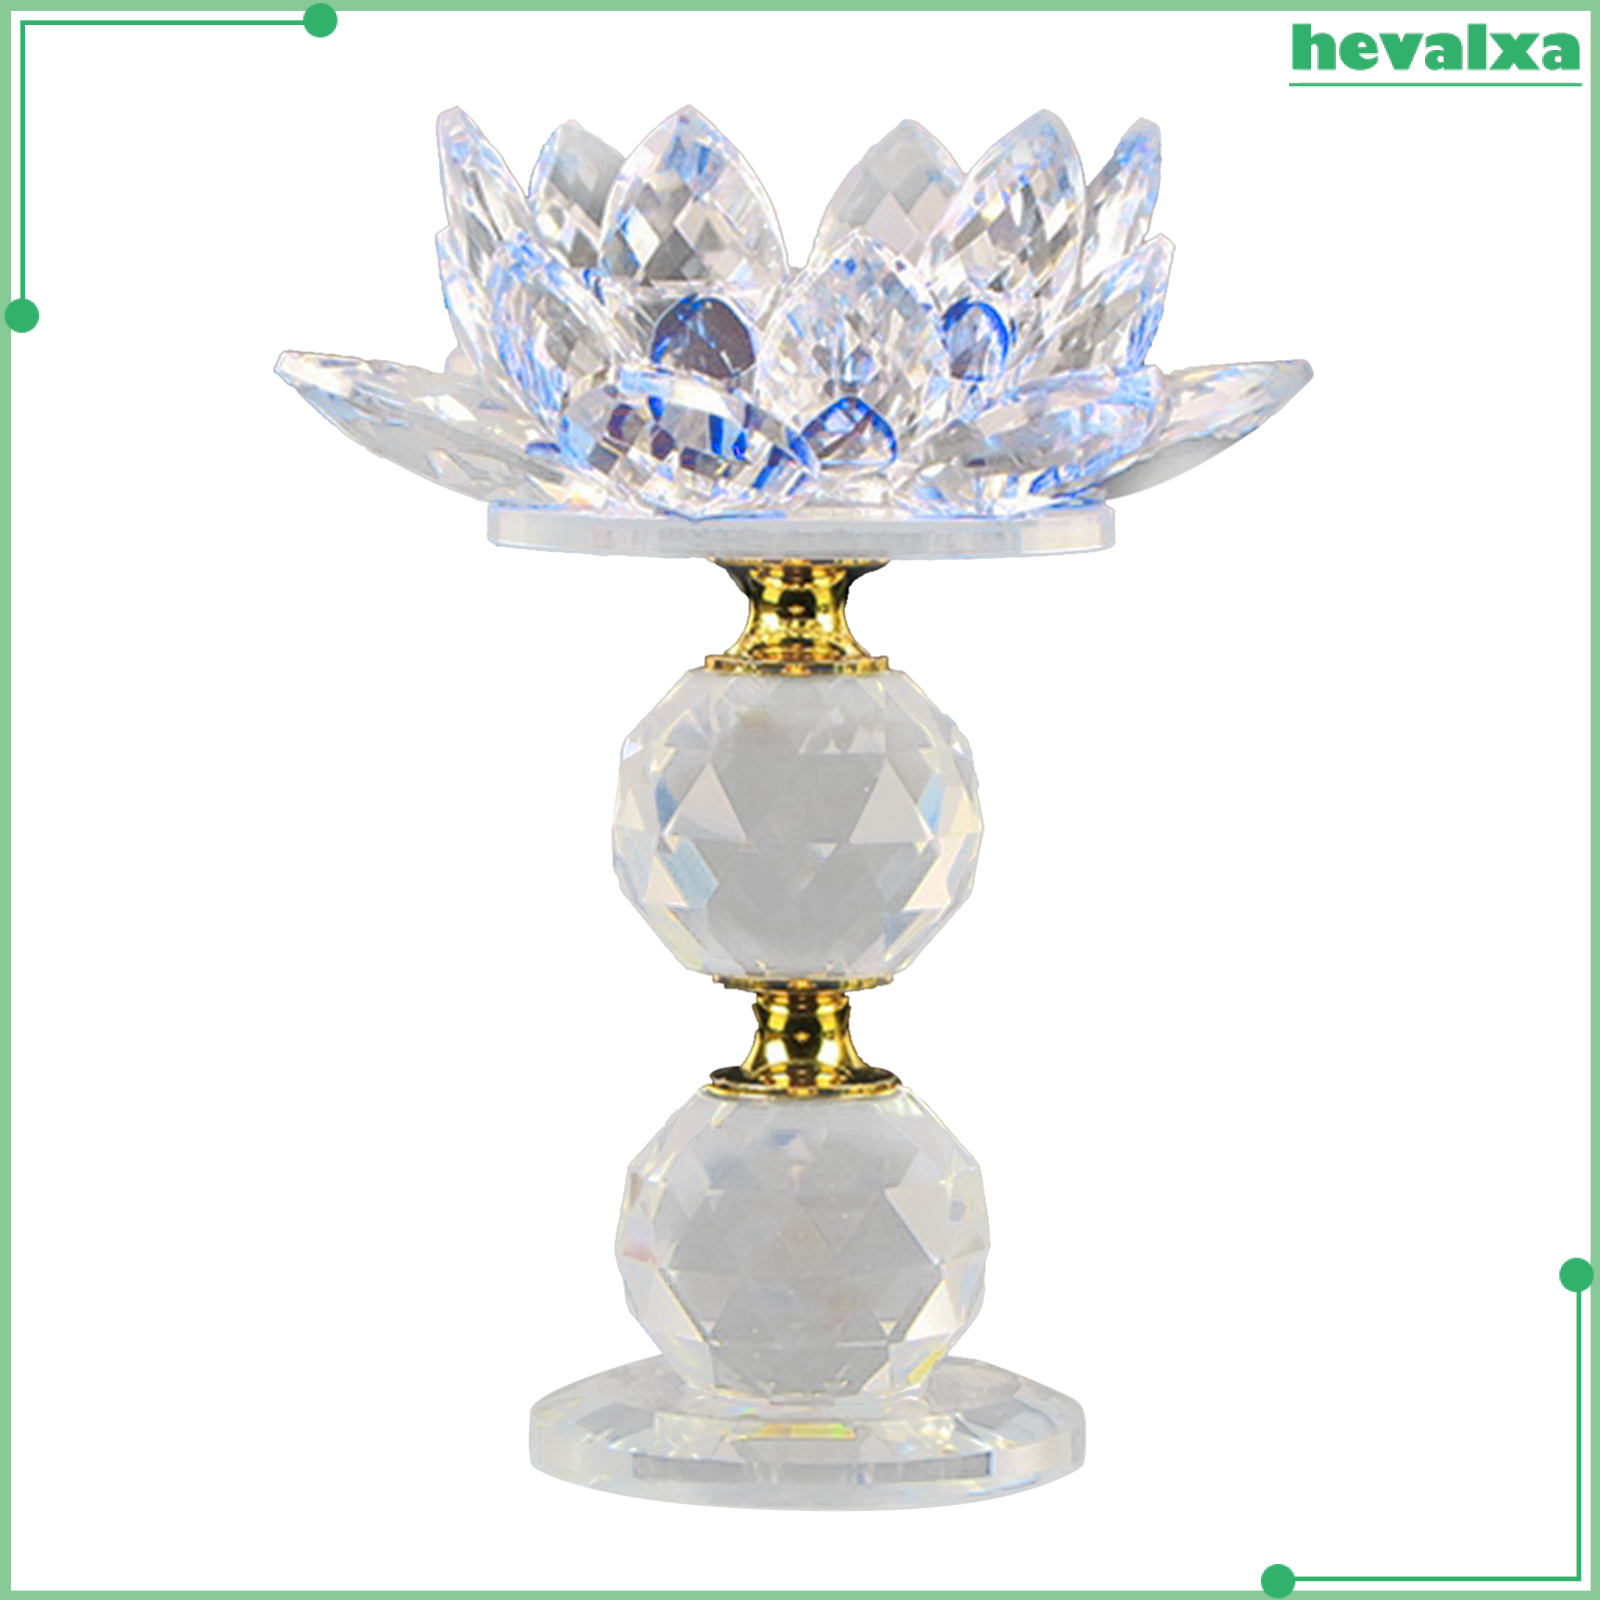 Chân đèn cầy hình hoa sen bằng pha lê phản chiếu lấp lánh trang trí bàn cà phê/đám cưới/tiệc tùng/tạo phong thủy